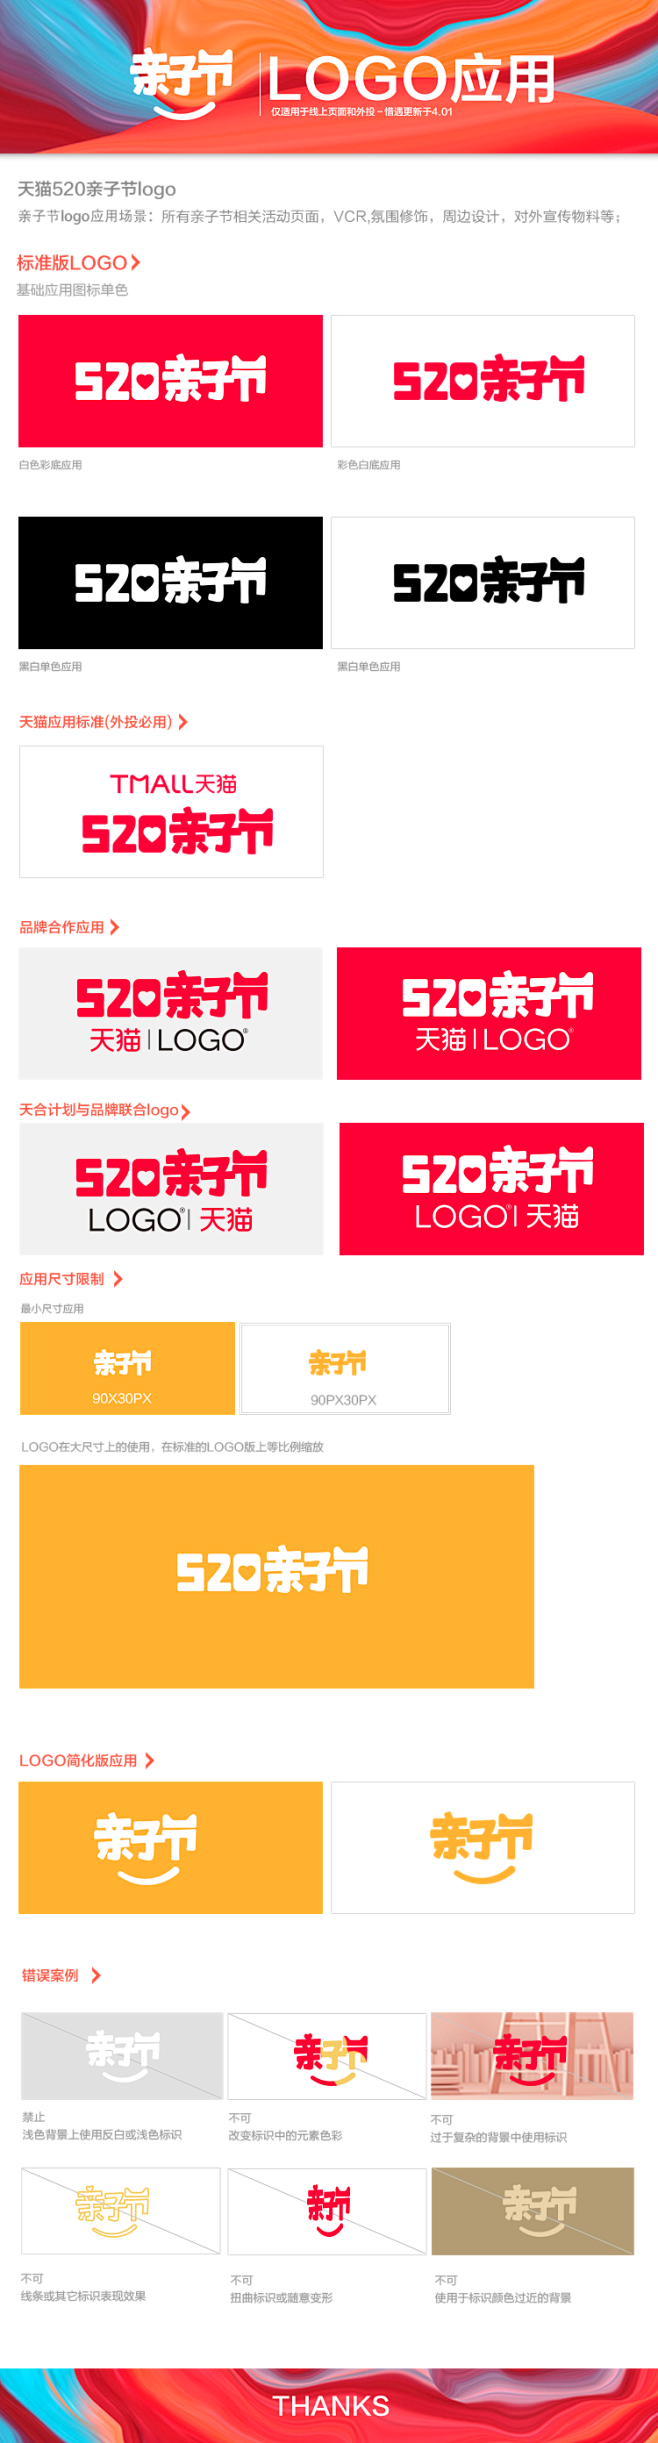 2018天猫亲子节logo 520亲子节...